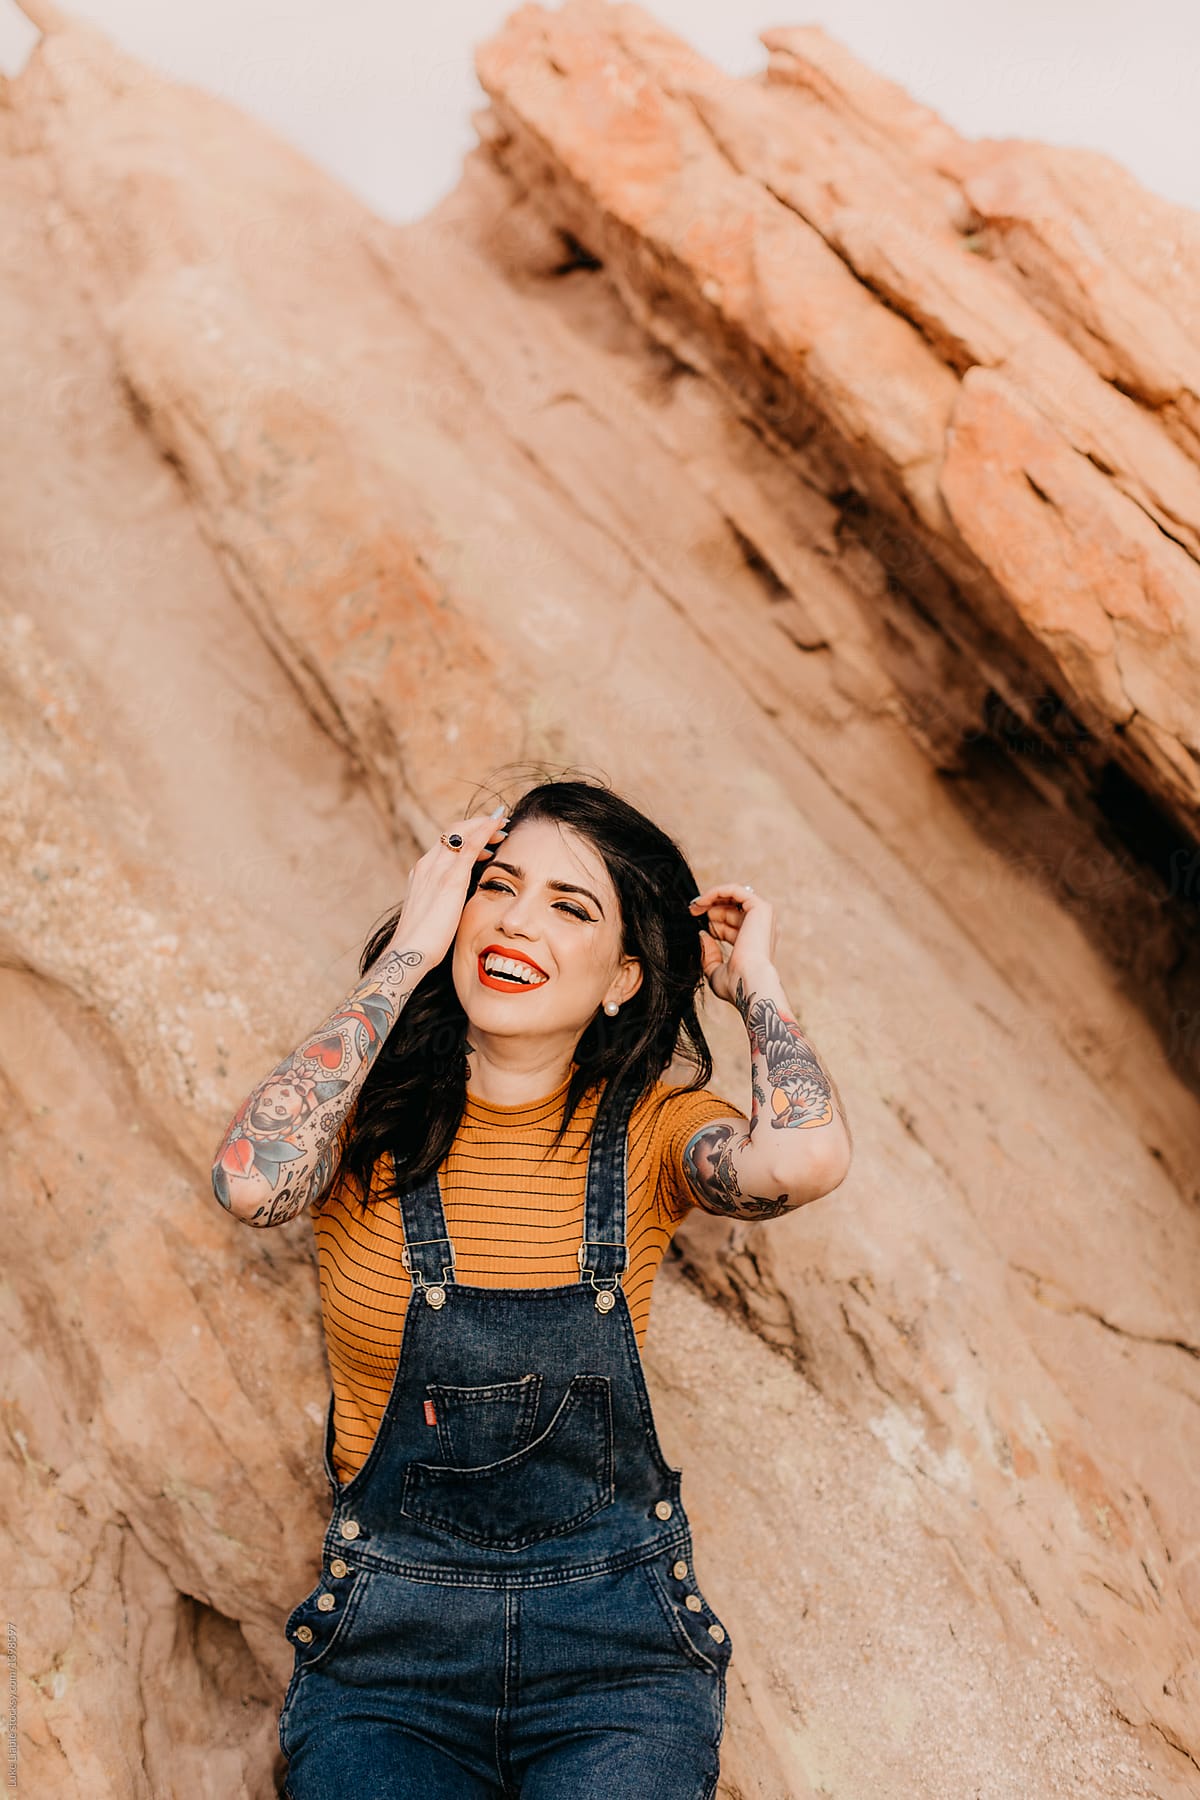 Stylish tattooed women laughing in desert